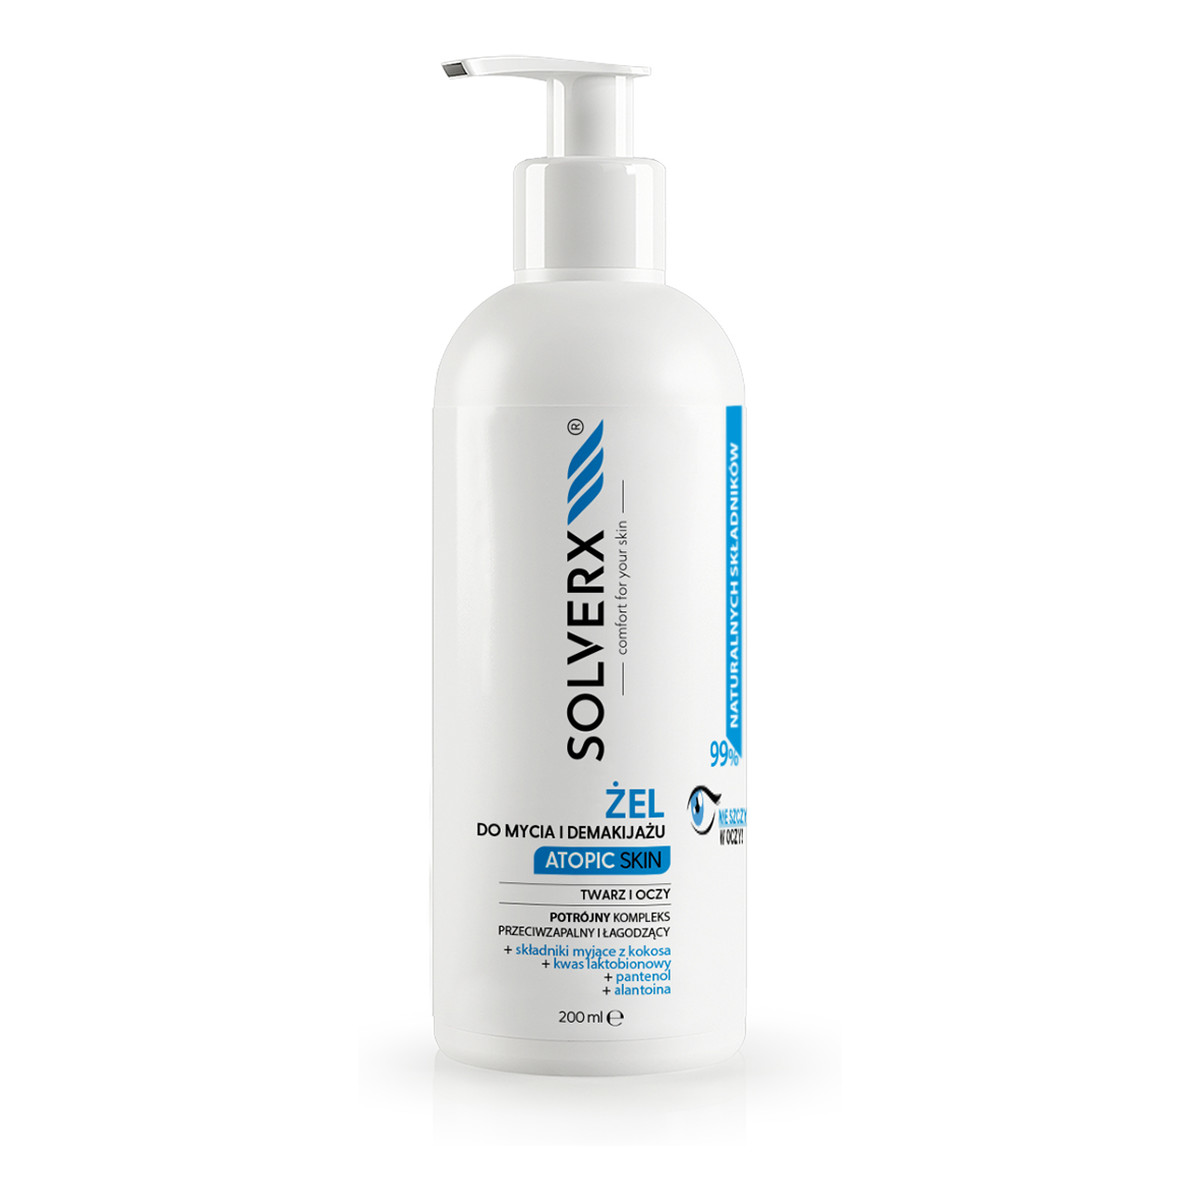 Solverx Atopic Skin Żel do mycia i demakijażu twarzy i oczu 200ml